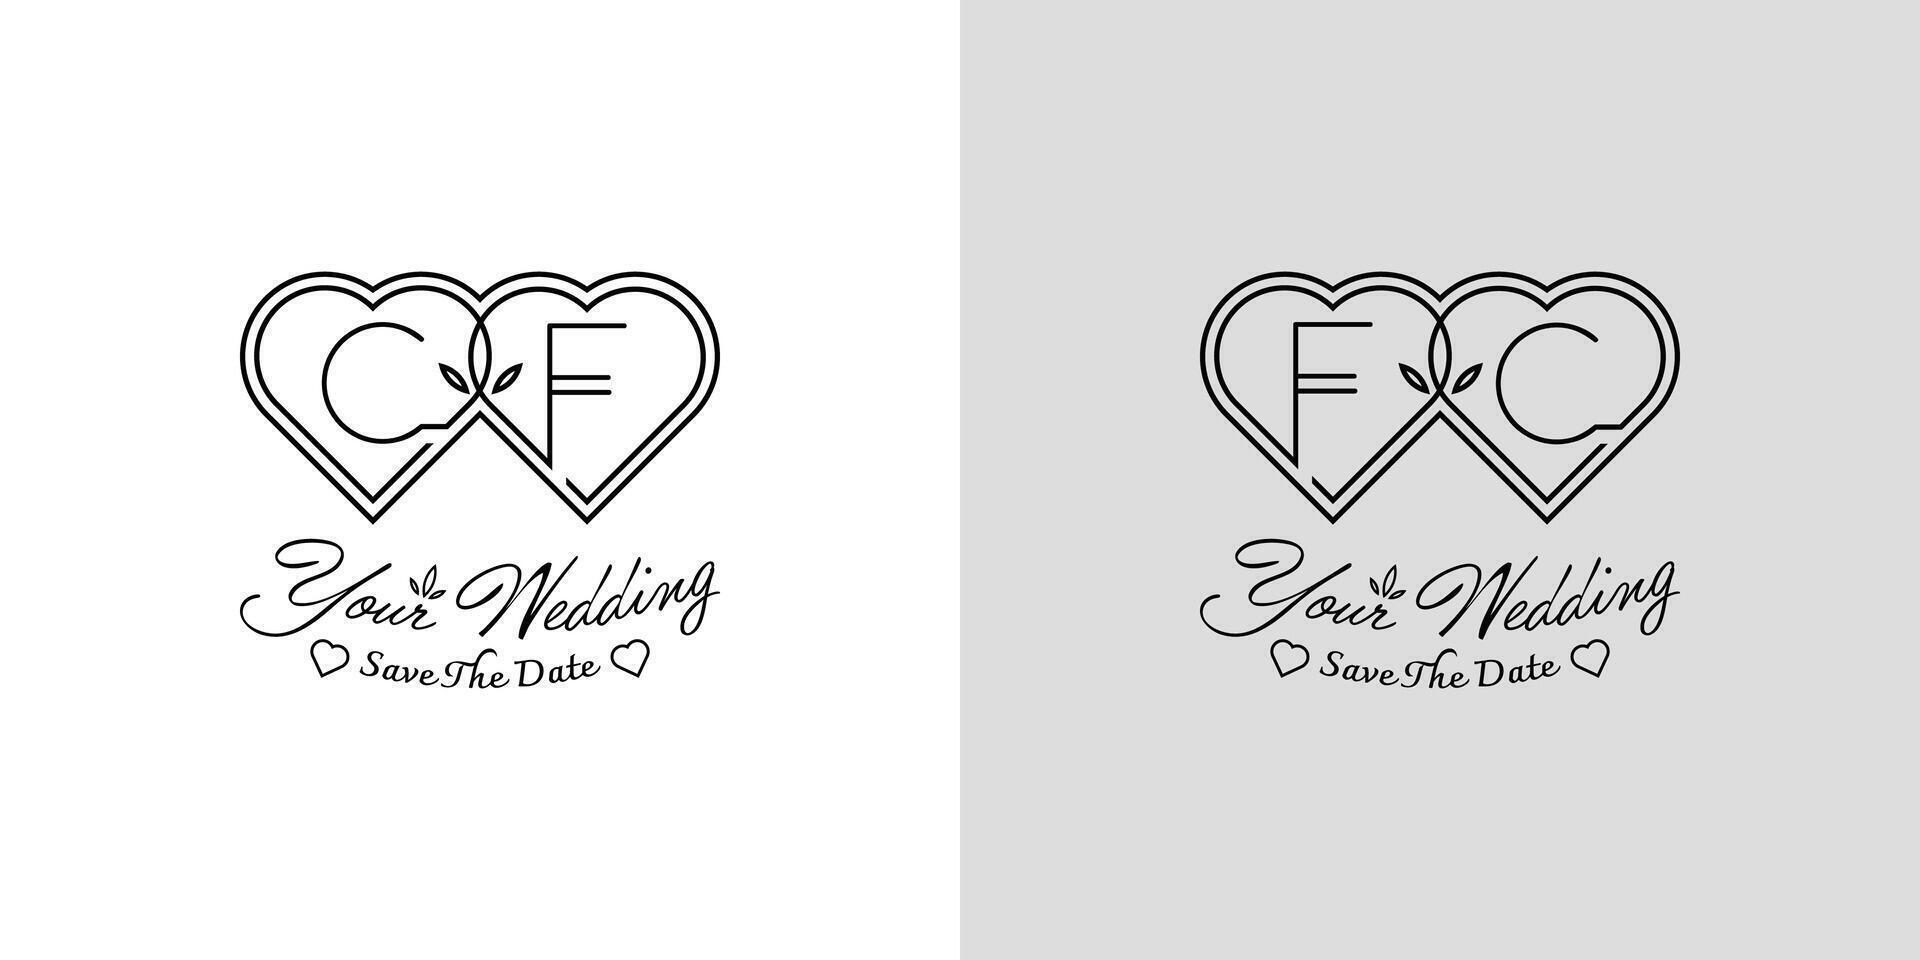 Briefe vgl und fc Hochzeit Liebe Logo, zum Paare mit c und f Initialen vektor